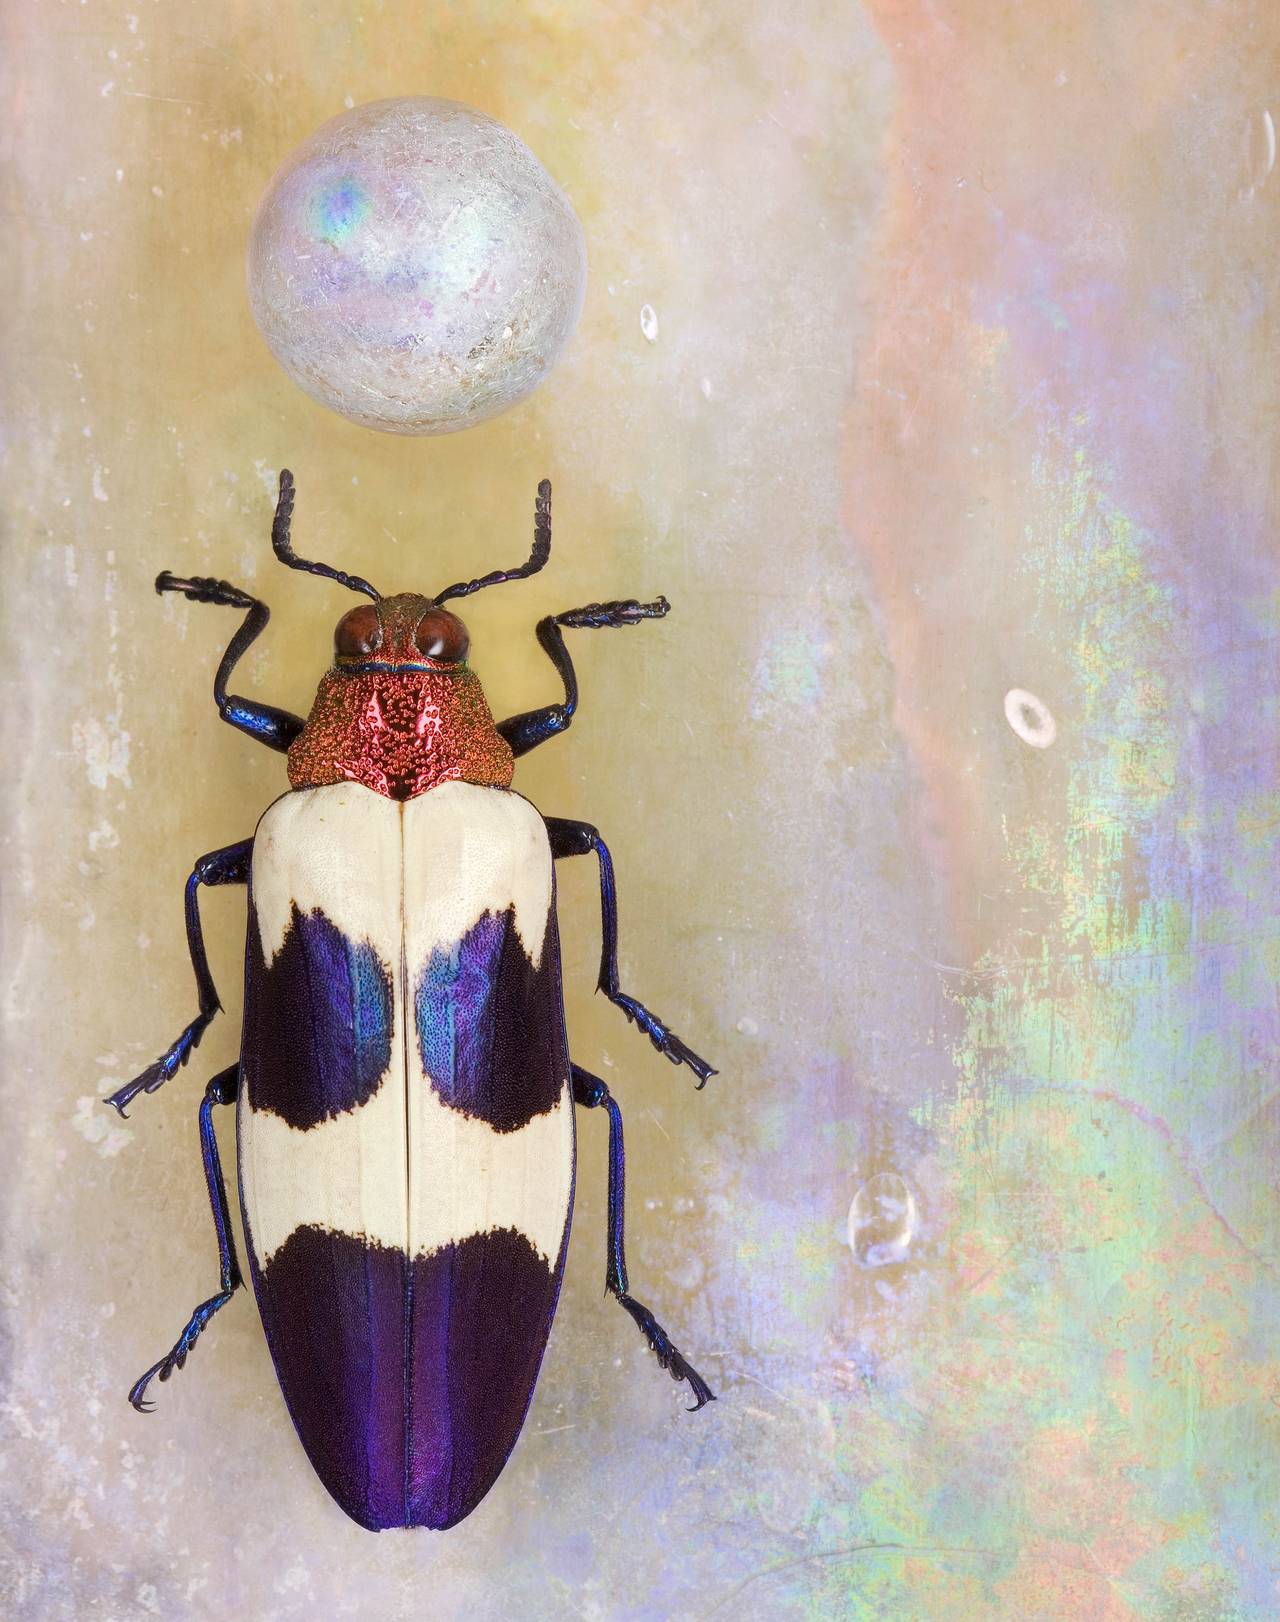 Jo Whaley Color Photograph - Chrysochroa bugueti rugicollio